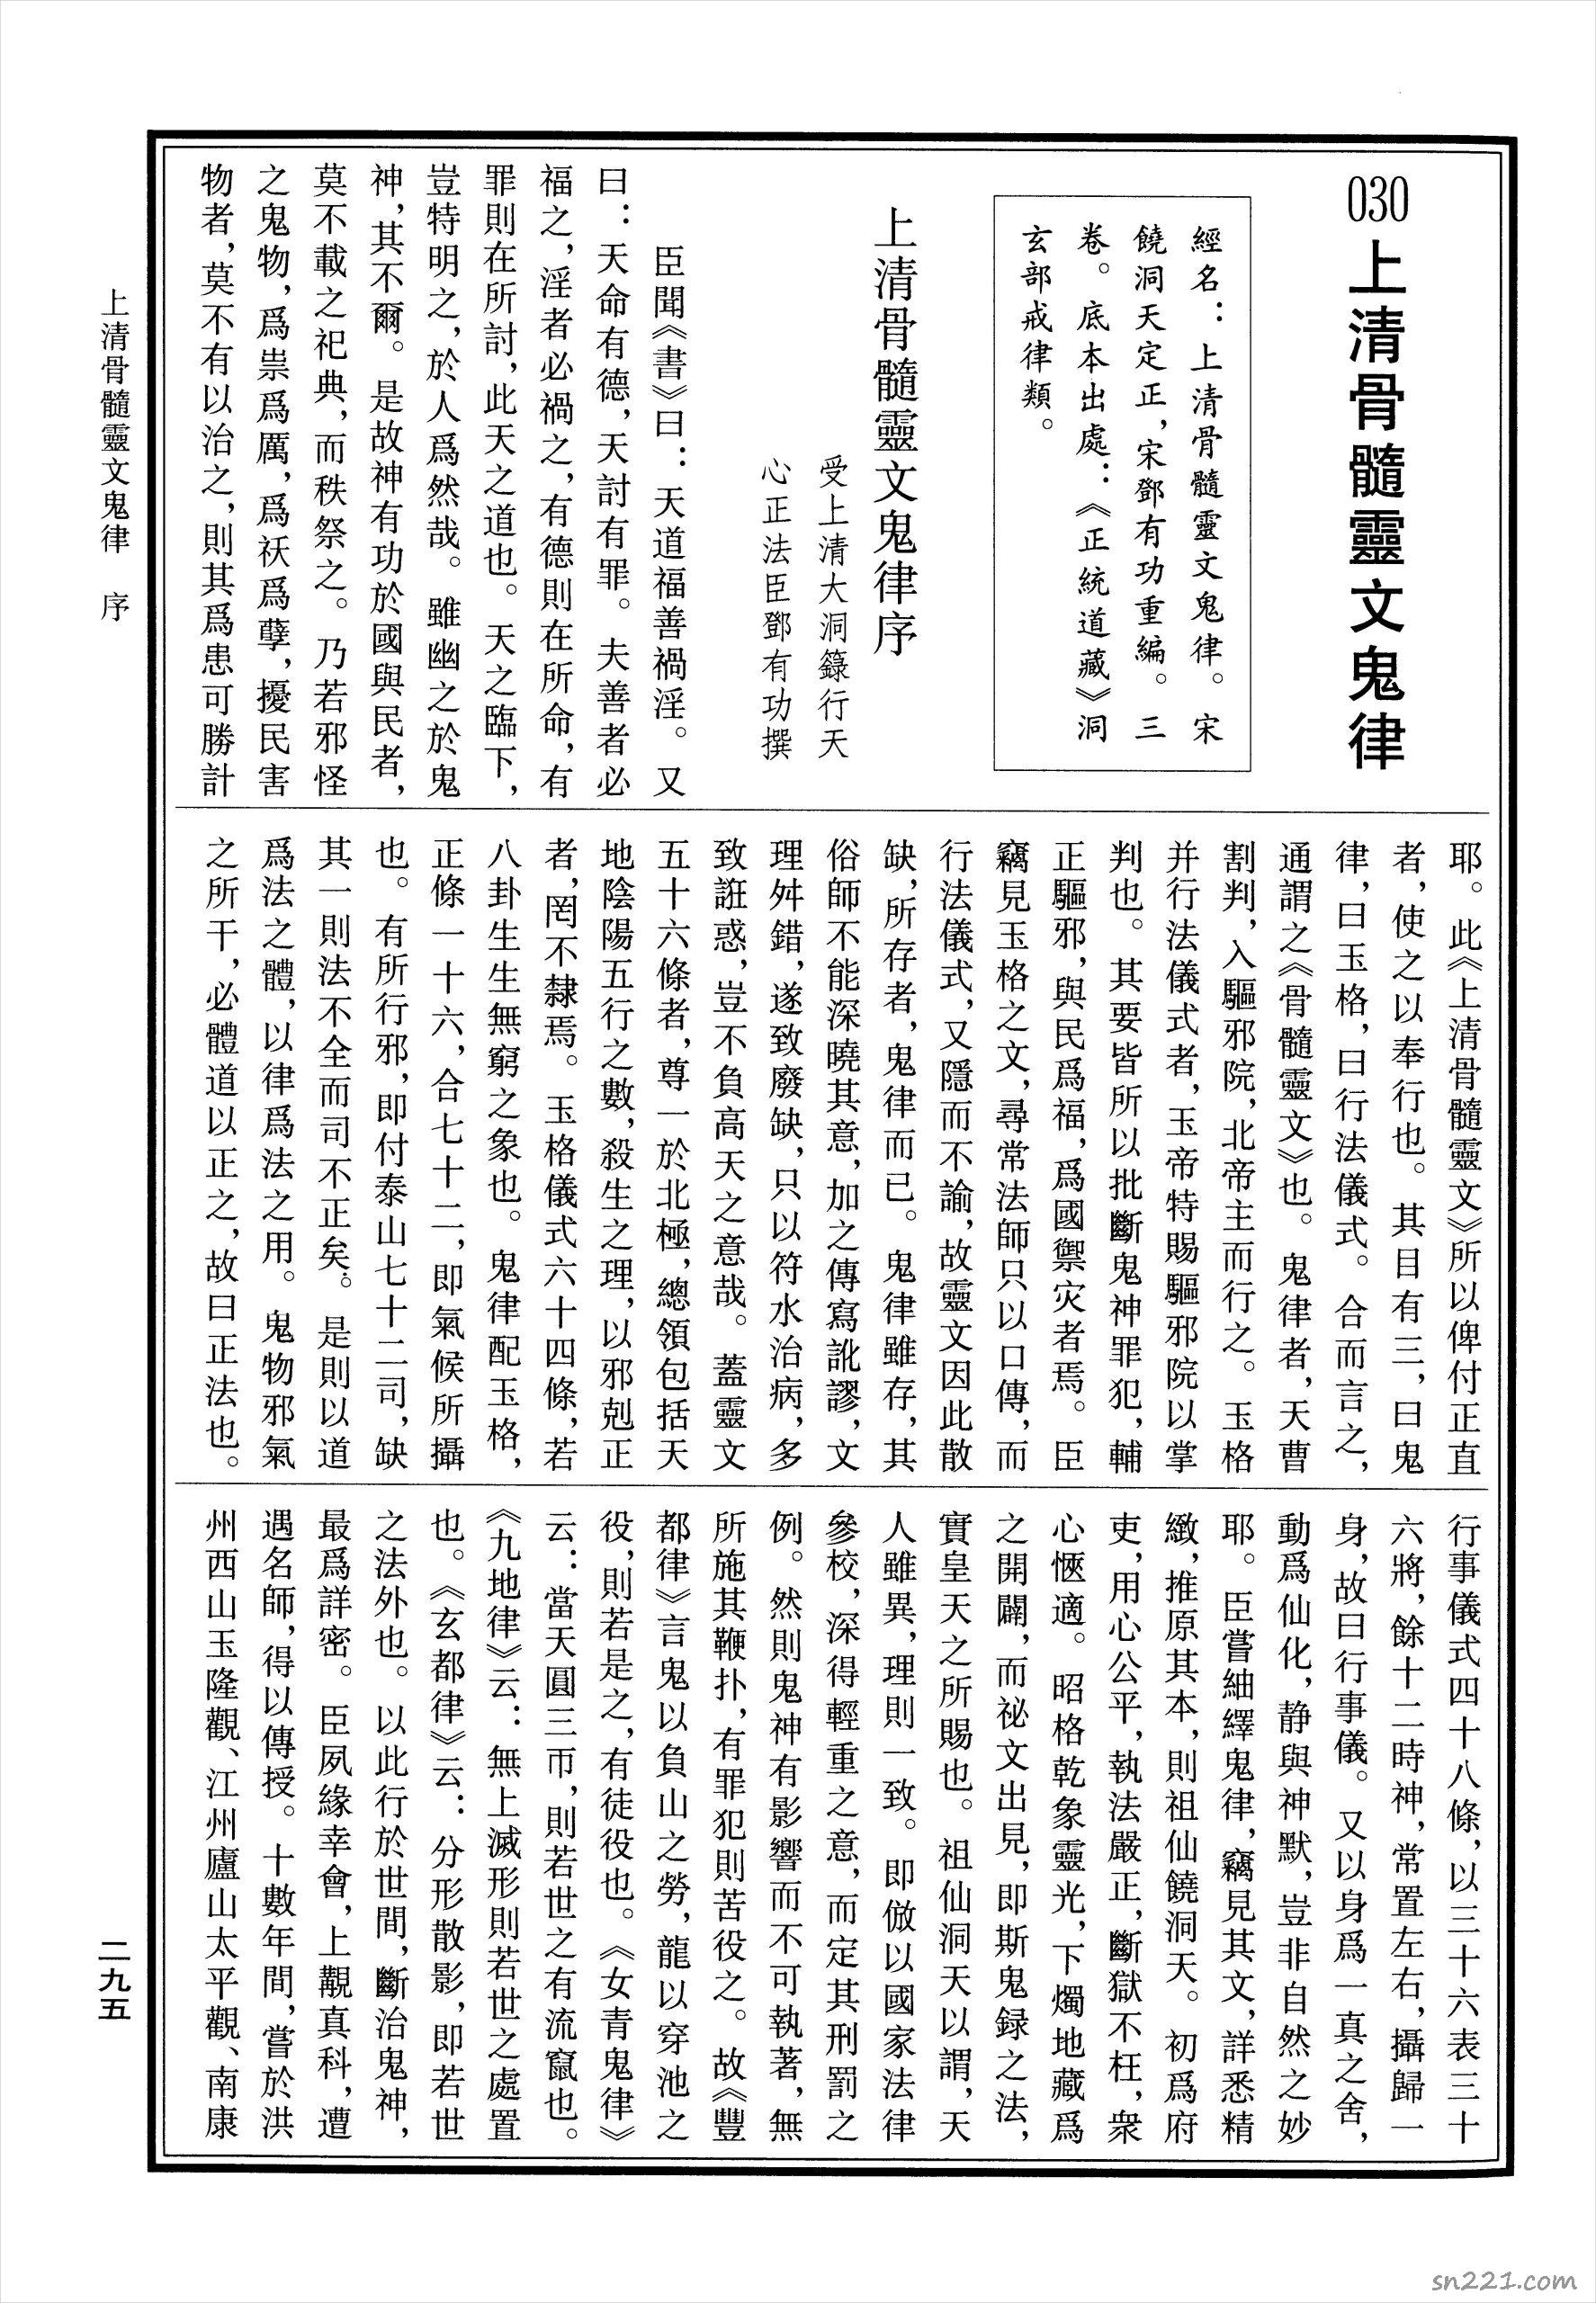 上清骨髓靈文鬼律13頁.pdf